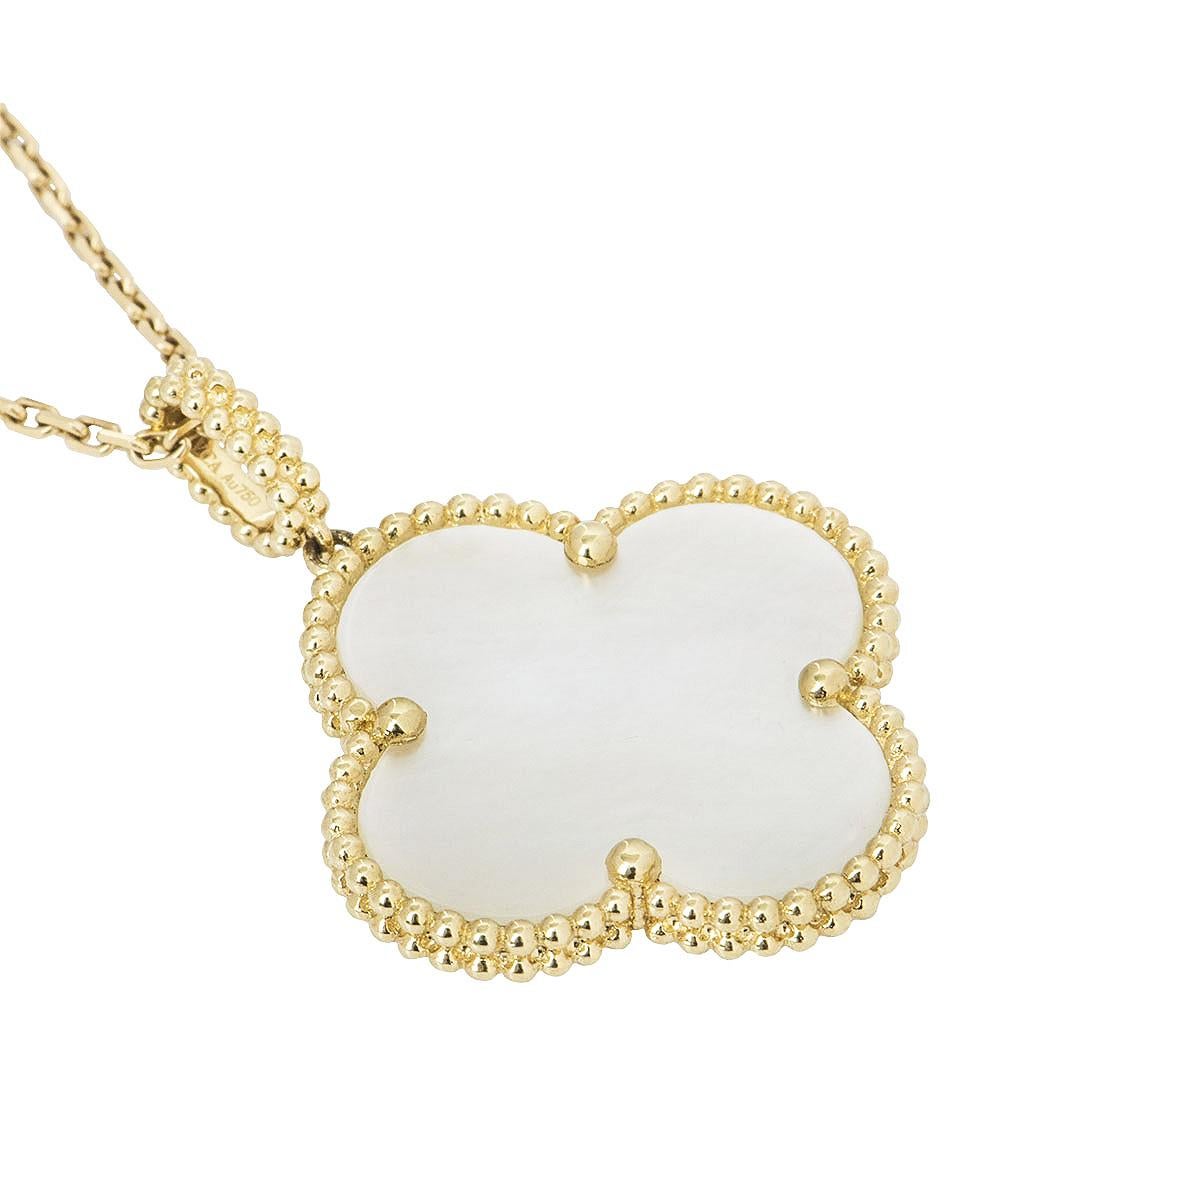 Collier de perles Van Cleef & Arpels en or jaune 18 carats de la collection Magic Alhambra. Le collier comprend le motif emblématique du trèfle à quatre feuilles de l'Alhambra avec une incrustation de nacre, complétée par un bord perlé. Le collier